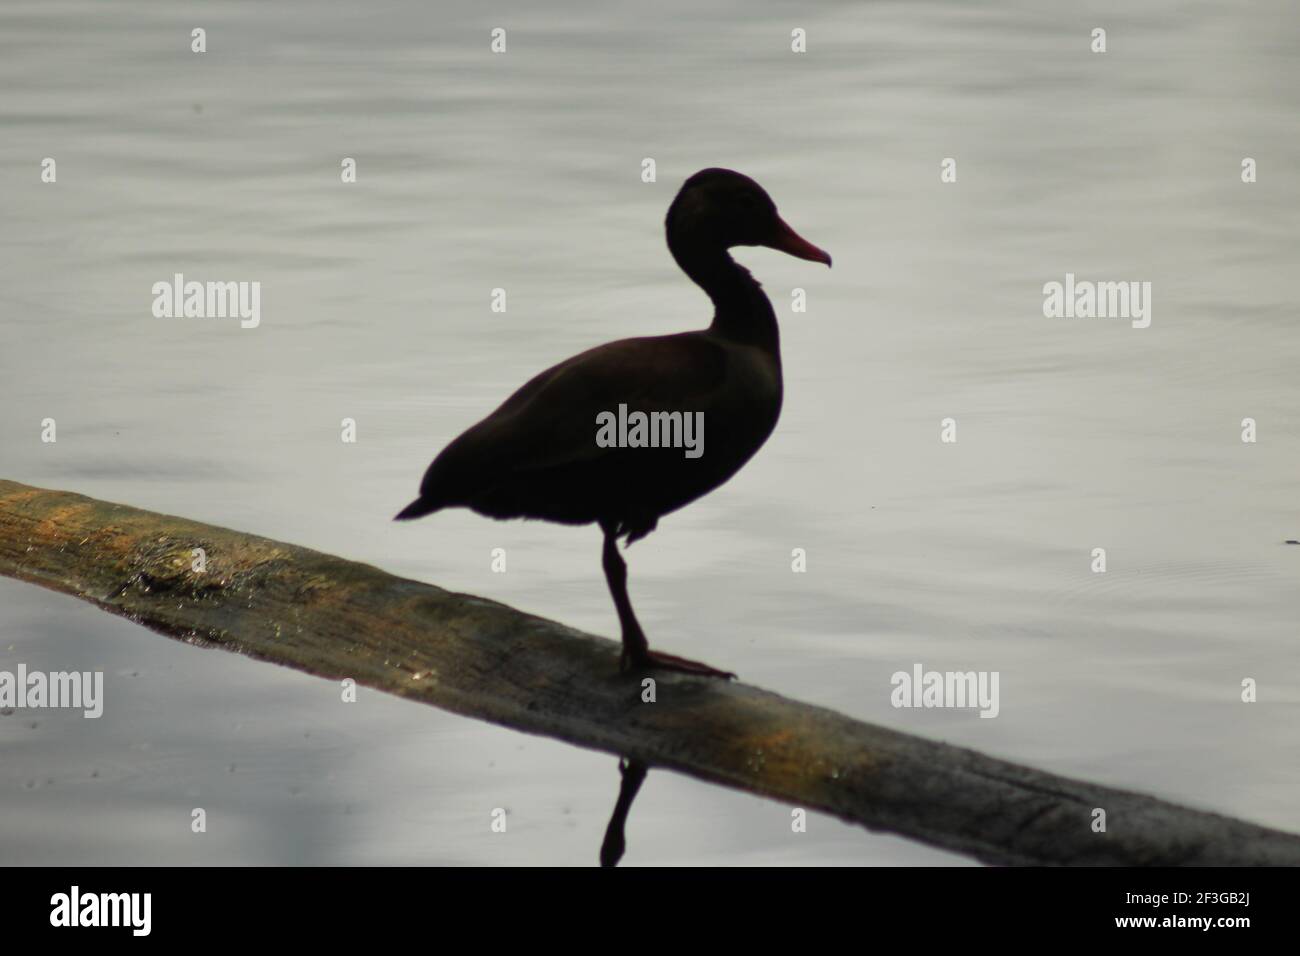 Fulvous pfeifende Ente, die in der Nähe des Wassers steht Stockfoto